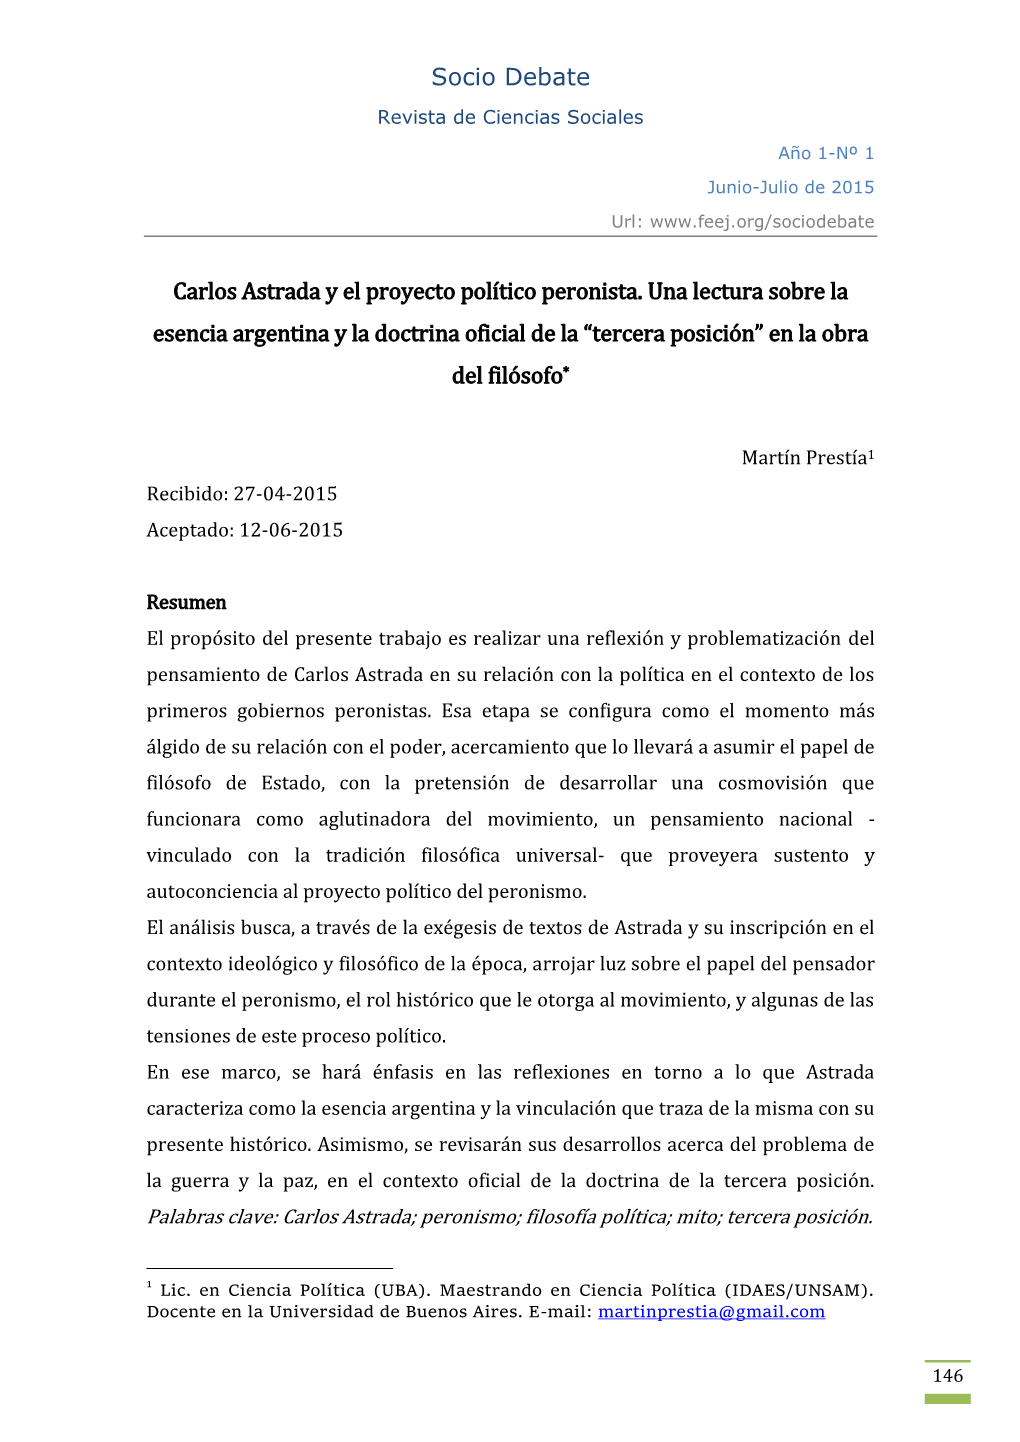 Socio Debate Carlos Astrada Y El Proyecto Político Peronista. Una